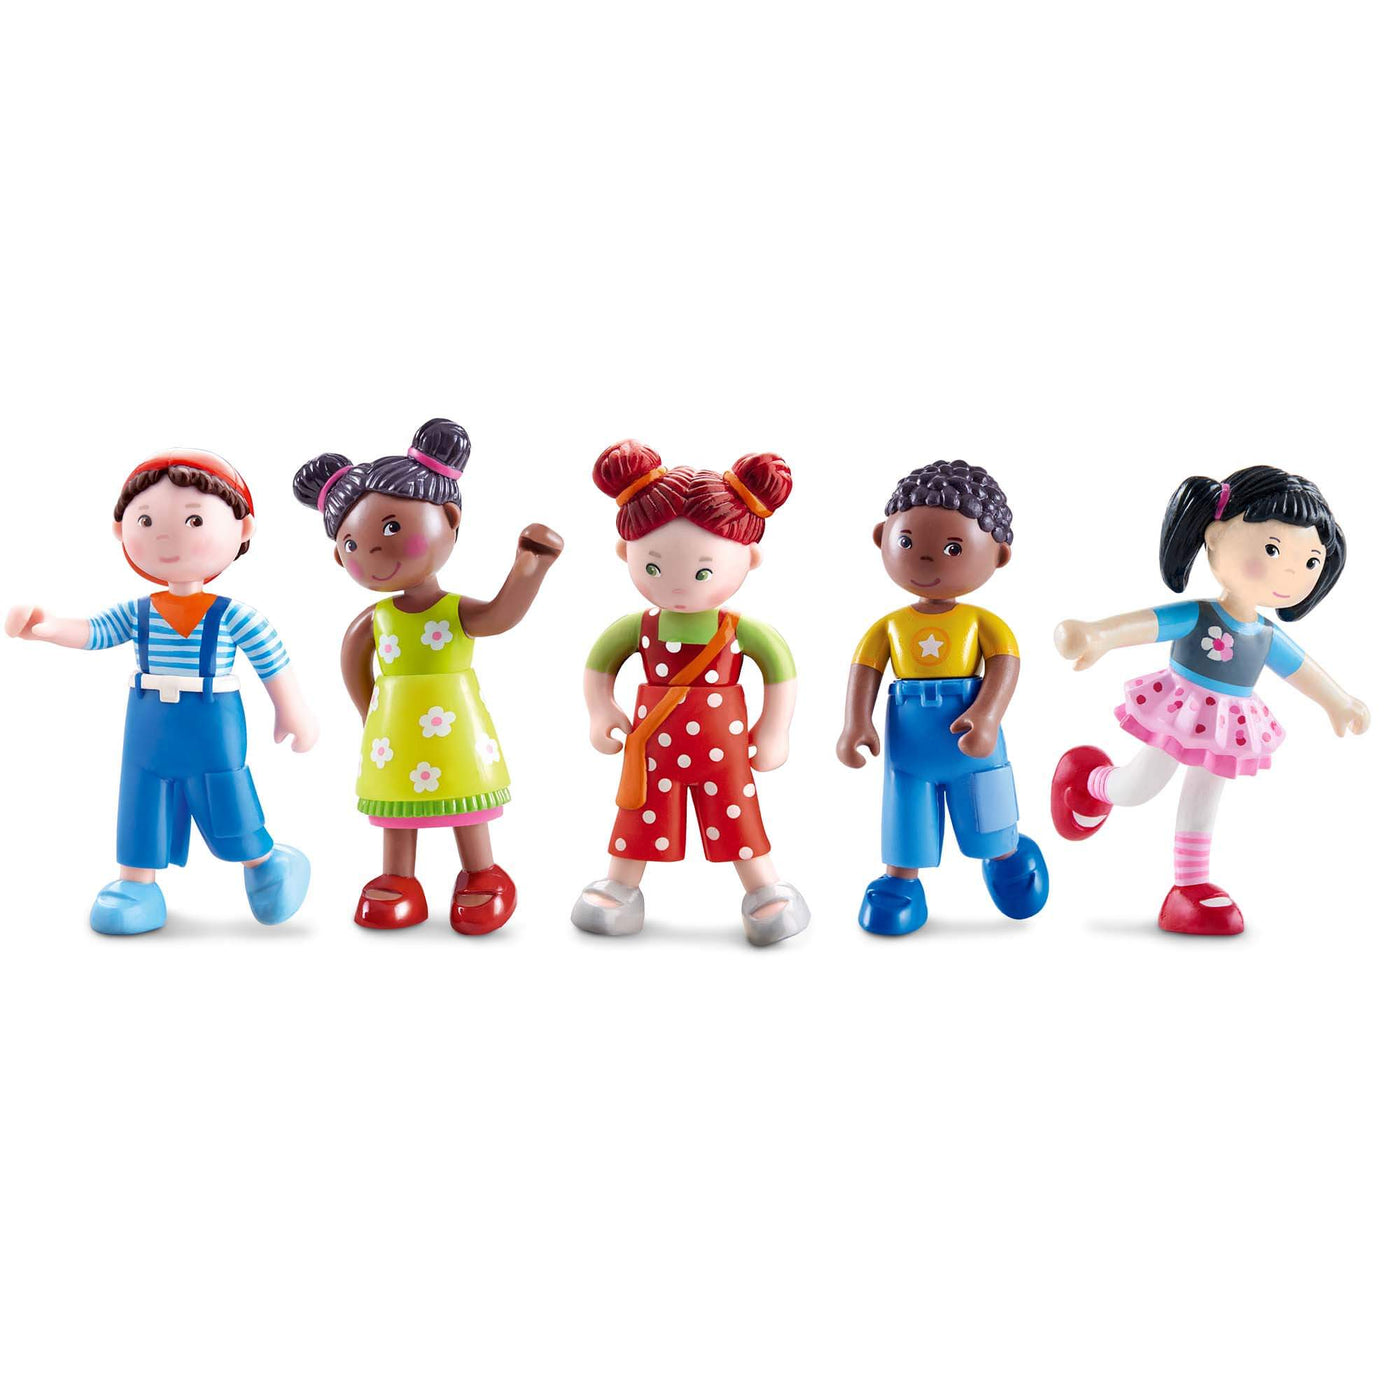 HABA Little Friends best selling dolls bundle